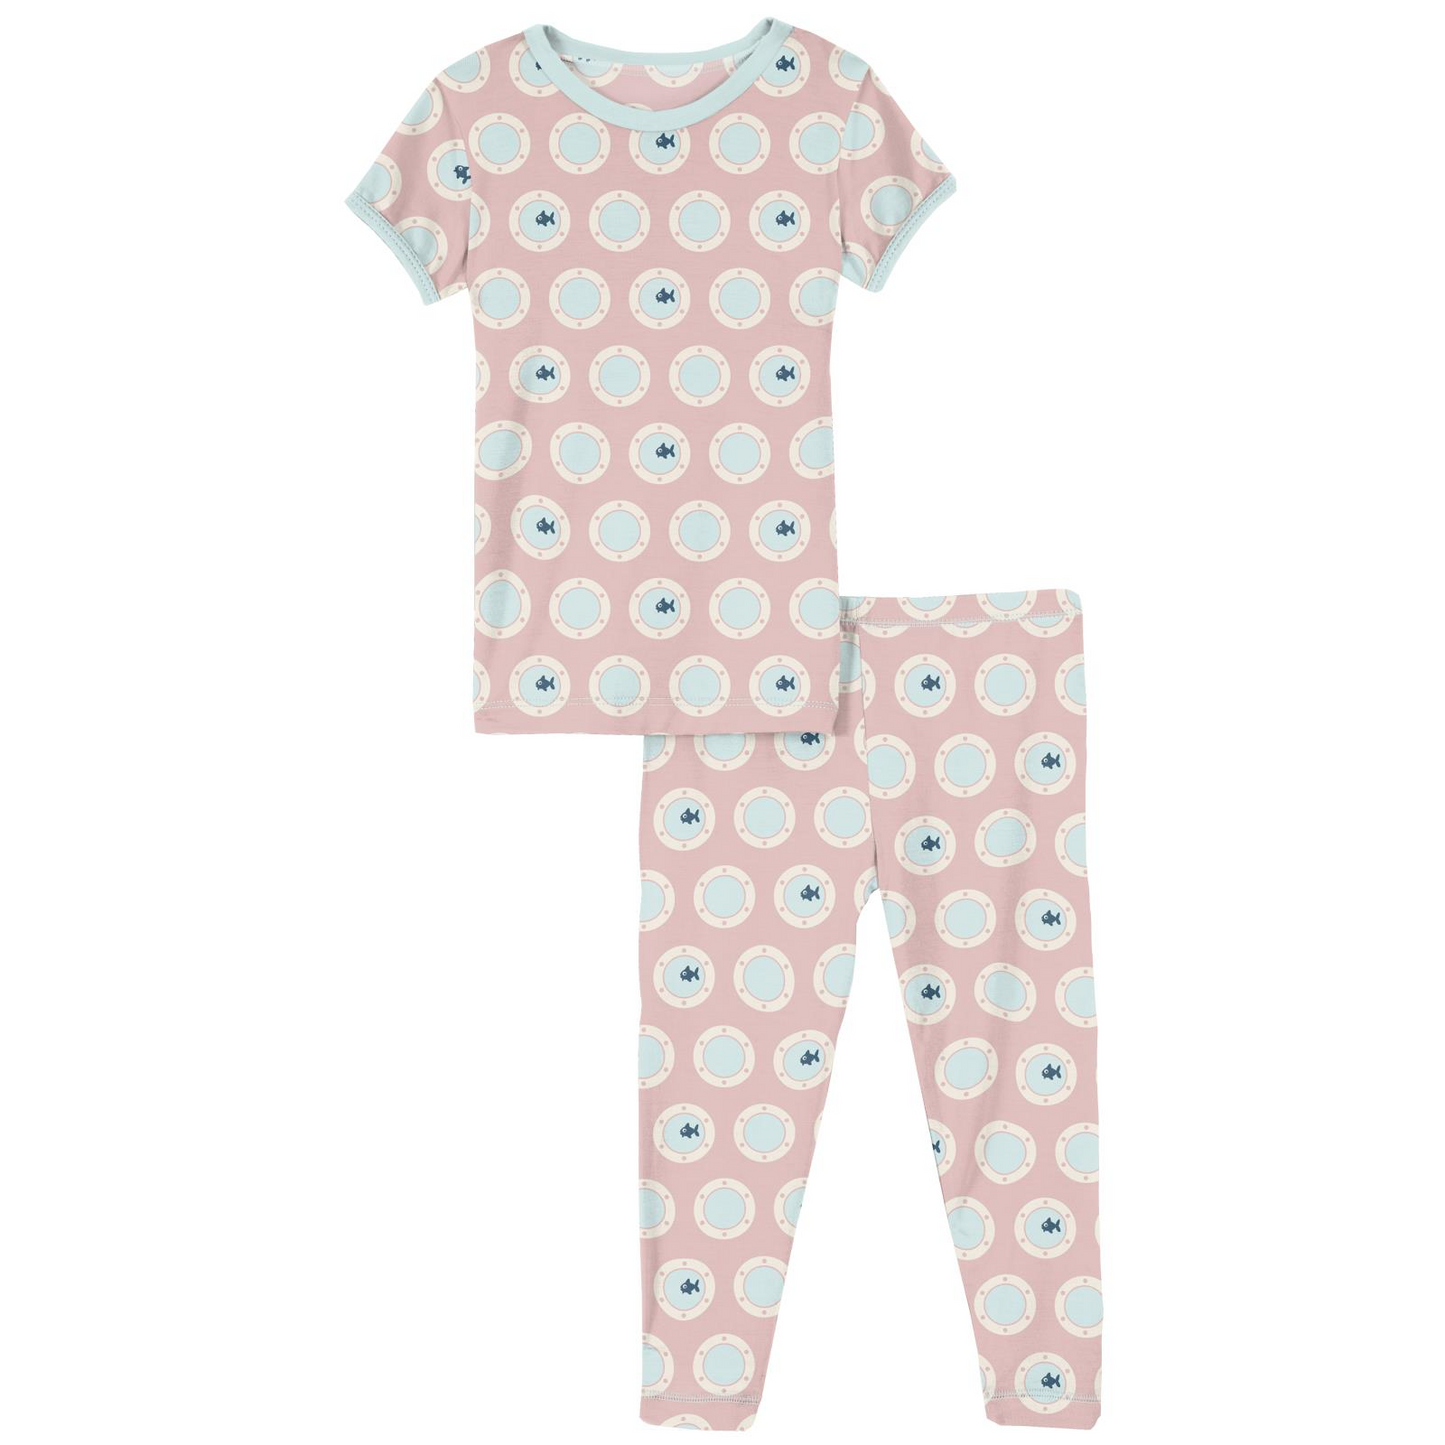 2 Piece Pajama Set (Short Sleeves) - Baby Rose Porthole